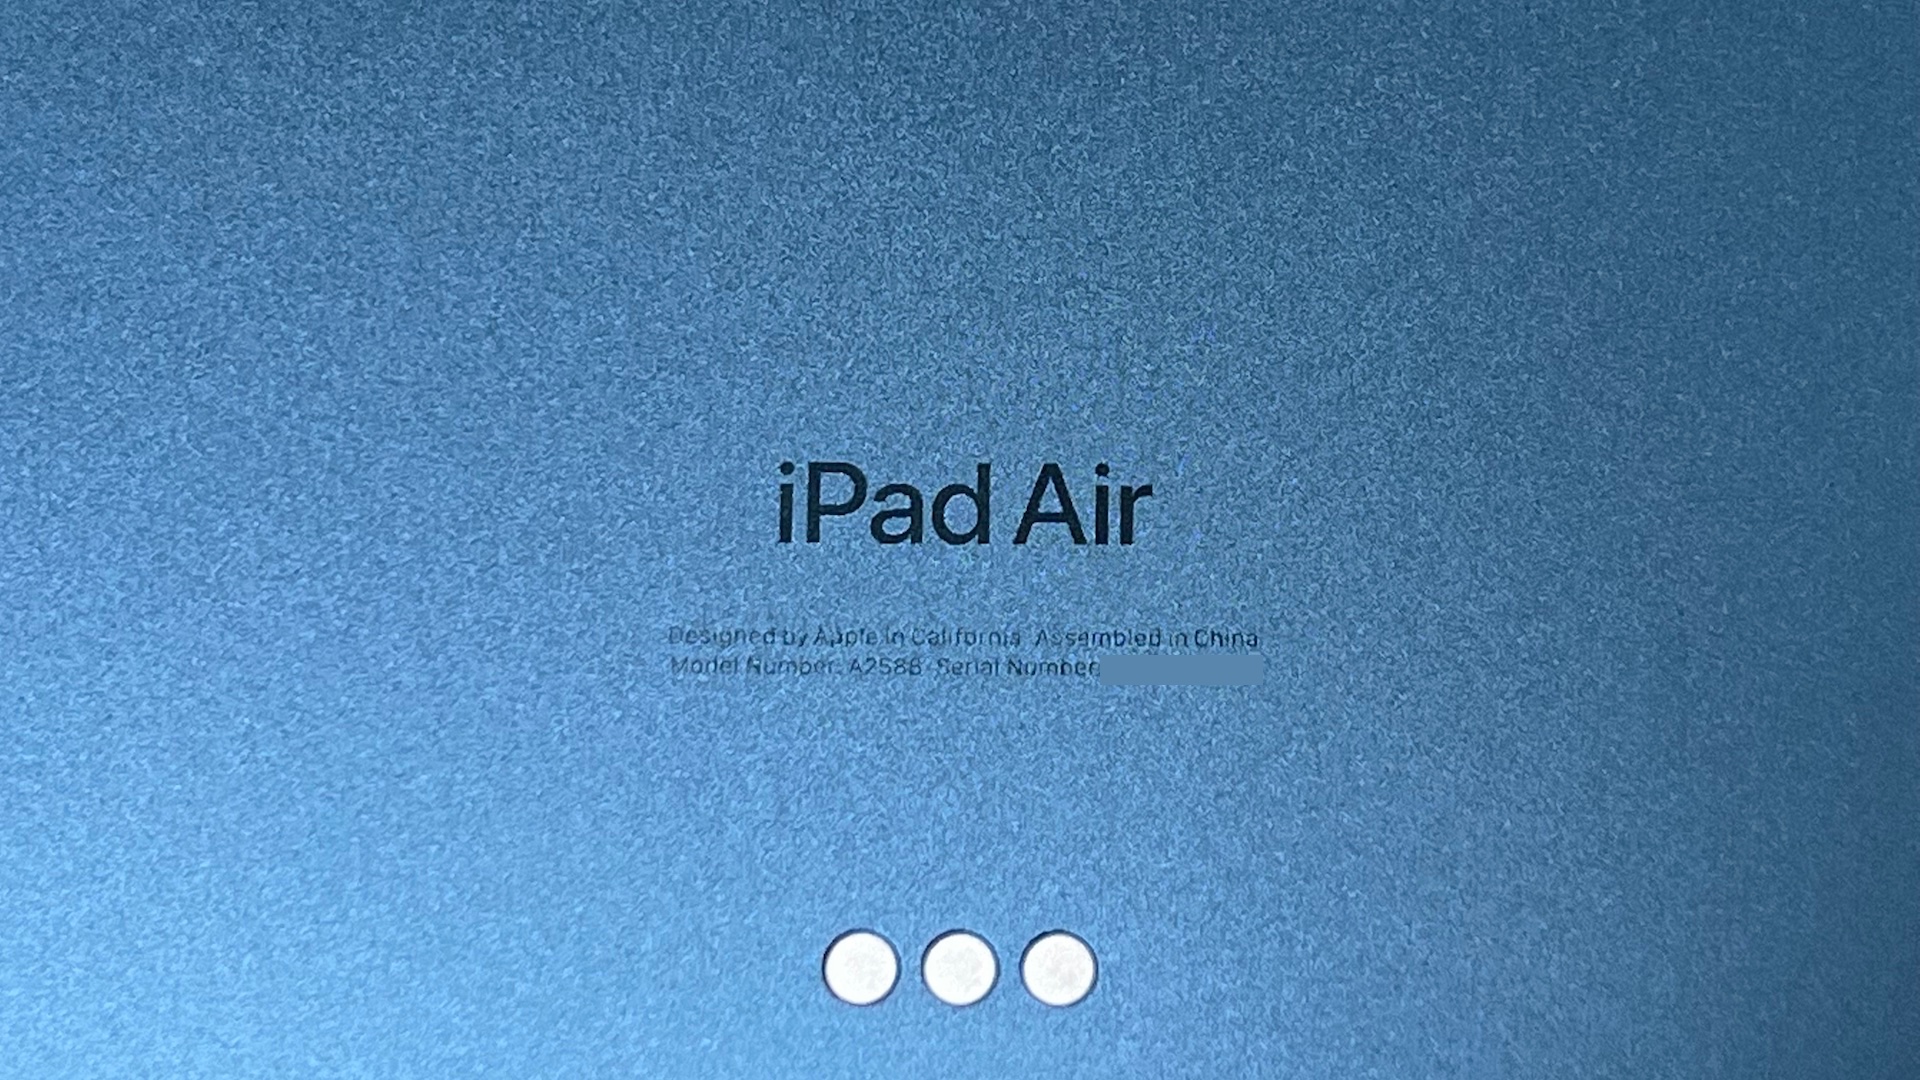 iPad Airのロゴ